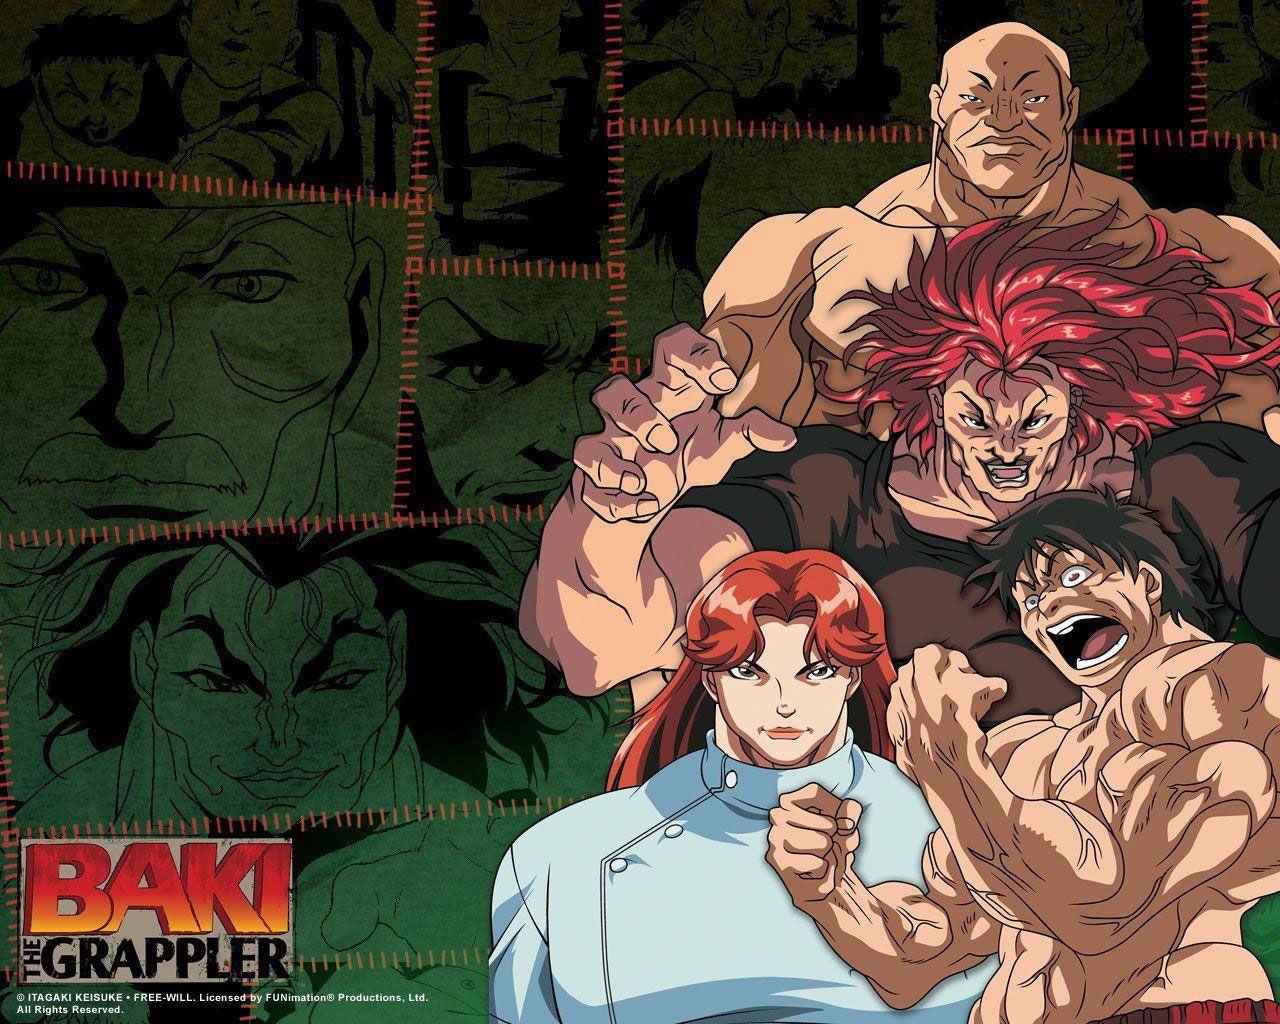 Baki The Grappler HD Wallpaper 4K For Pc. Anime wallpaper, Anime, HD wallpaper 4k